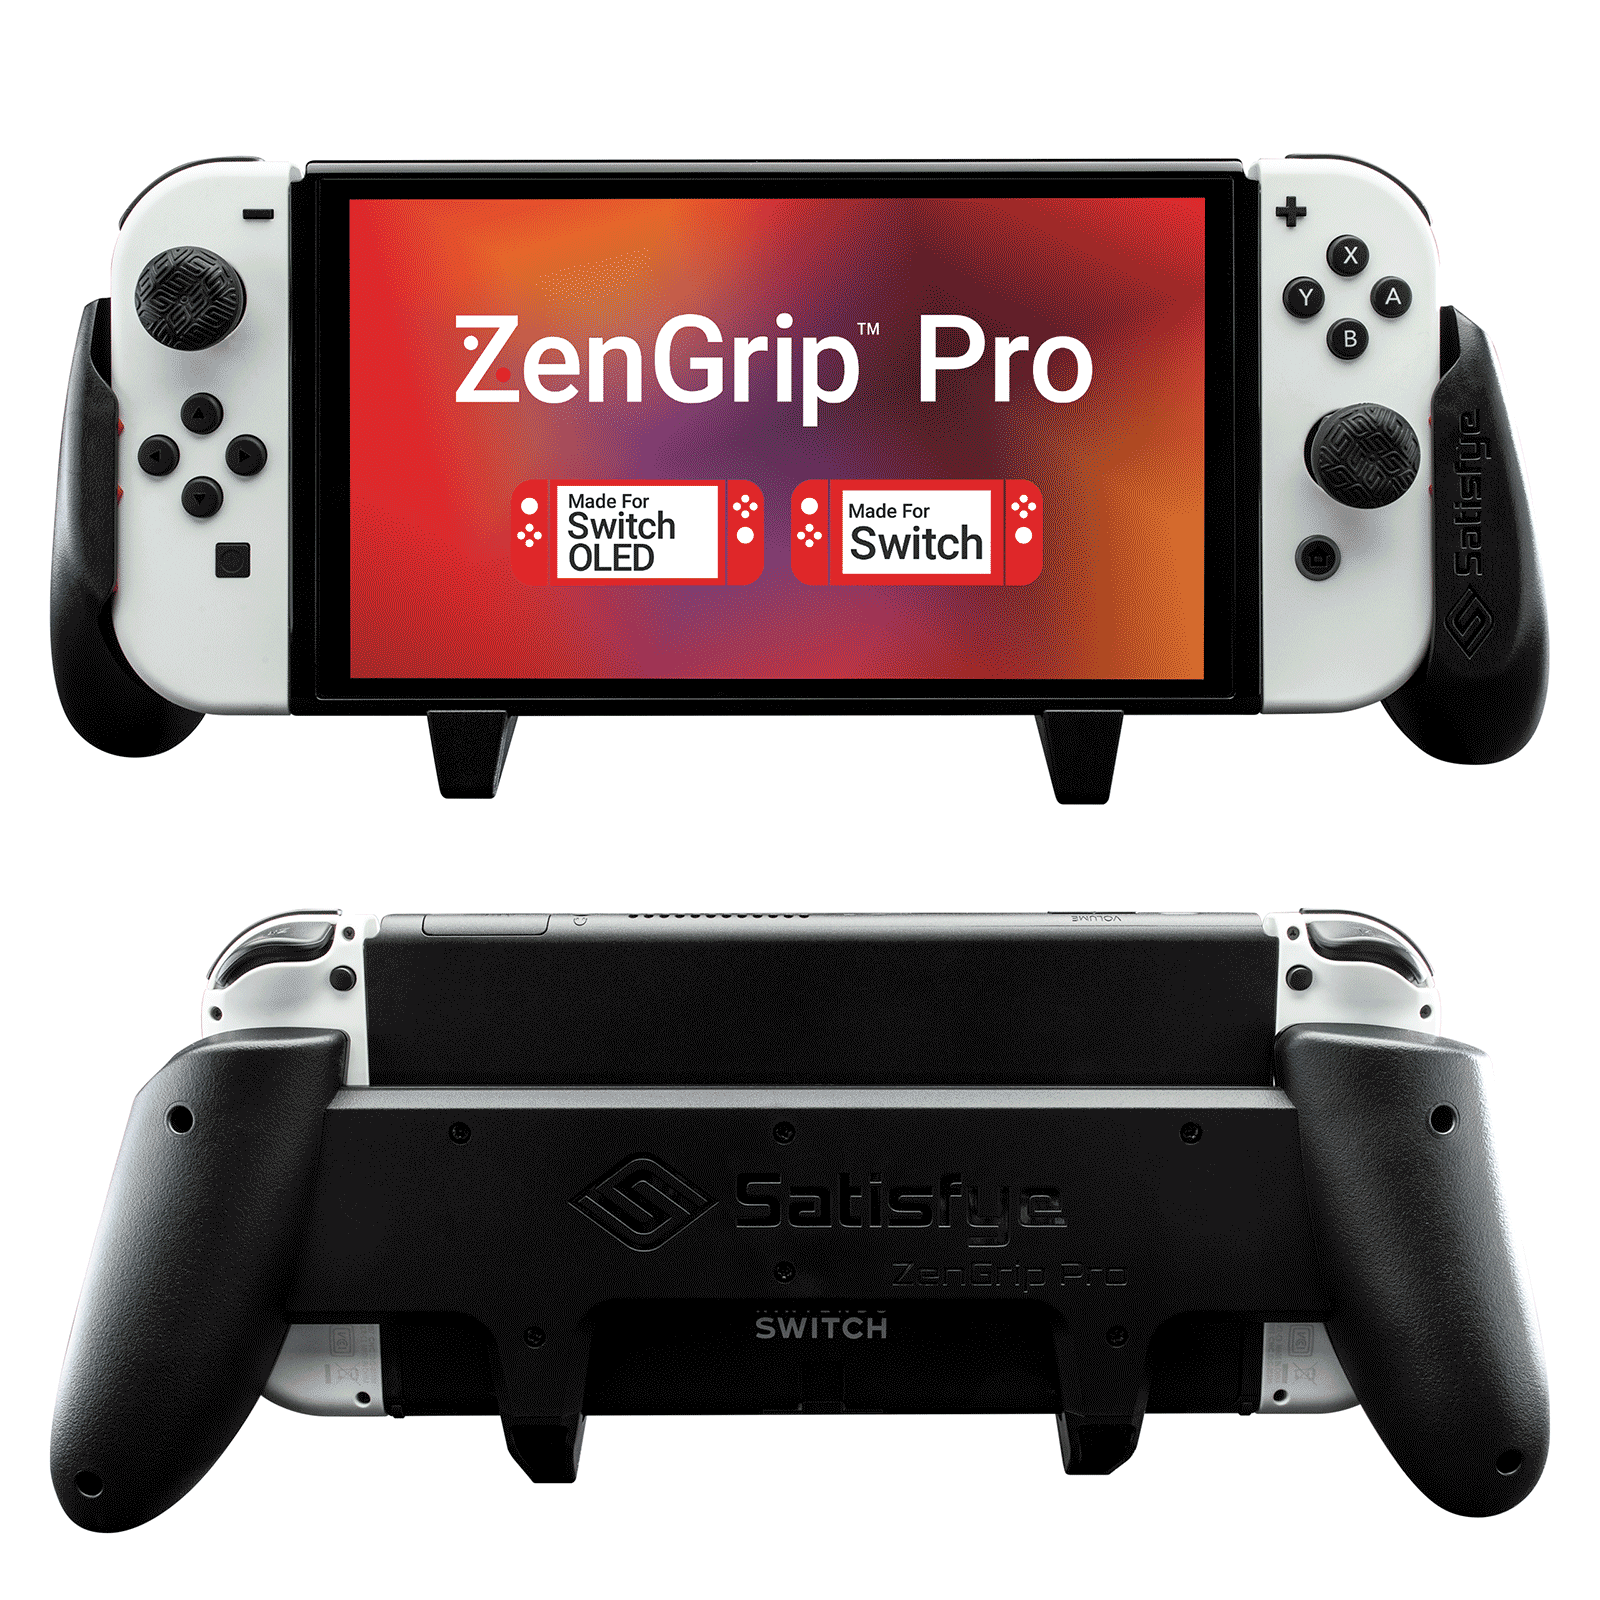 ZenGrip Pro